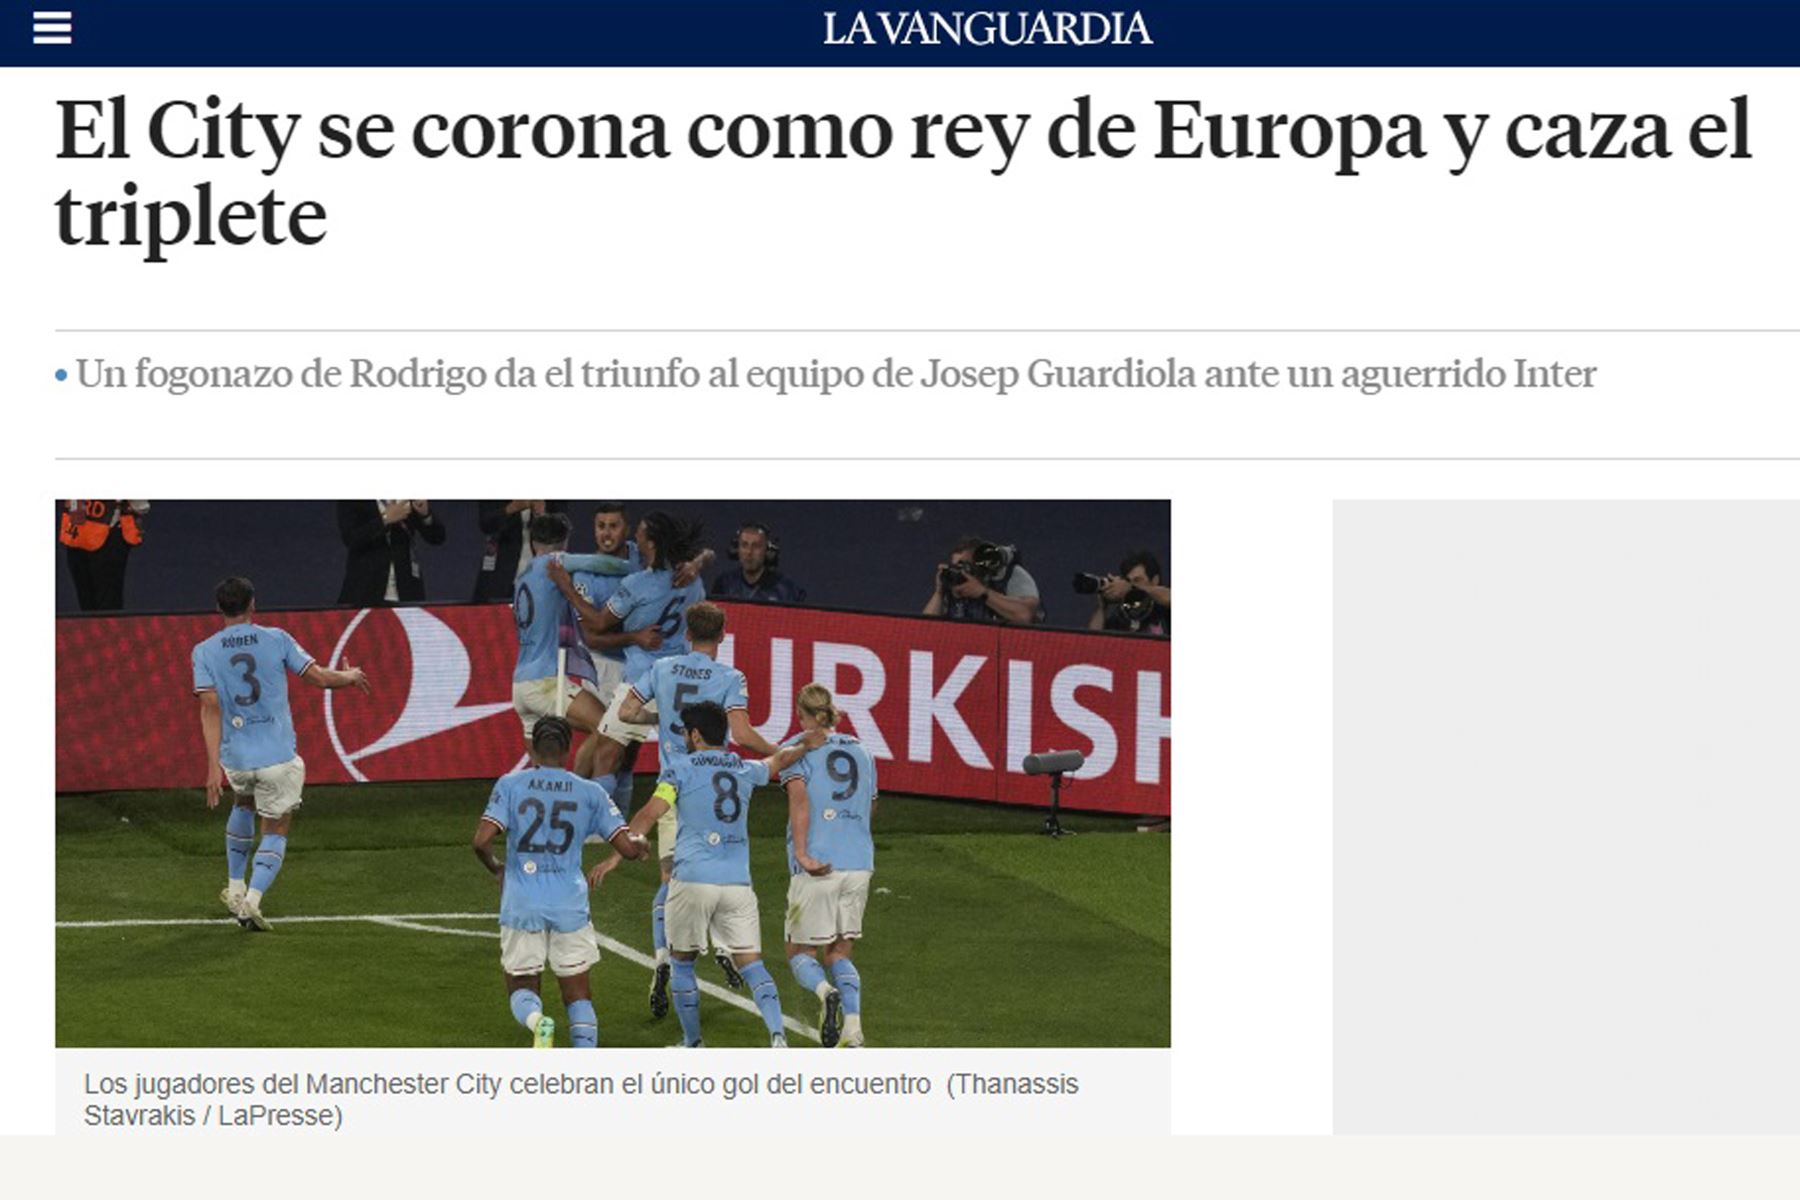 Así informan los medios internacionales el triunfo de Manchester City. En la imagen, portada del diario La Vanguardia.
Foto: Internet/Medios